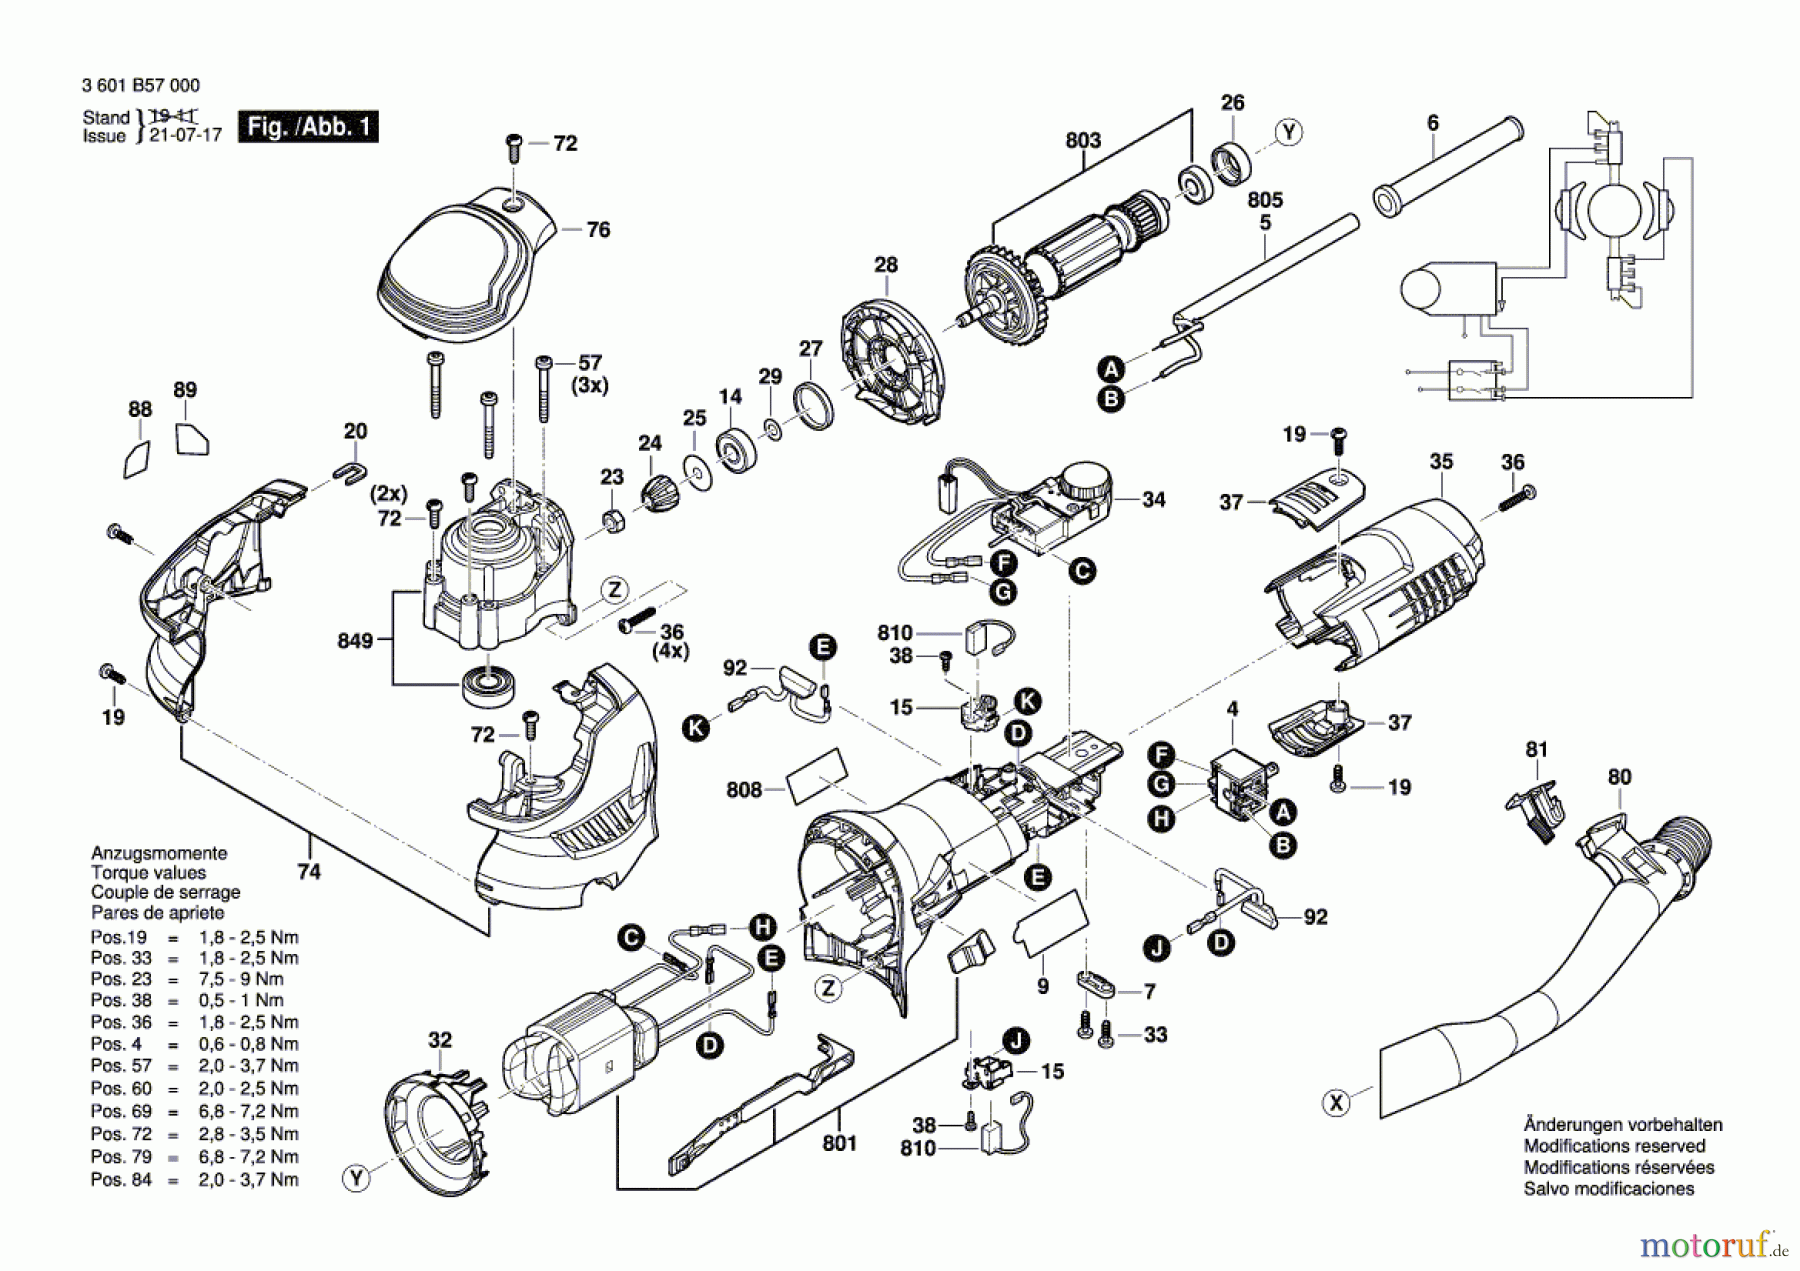  Bosch Werkzeug Exzenterschleifer GET 55-125 Seite 1